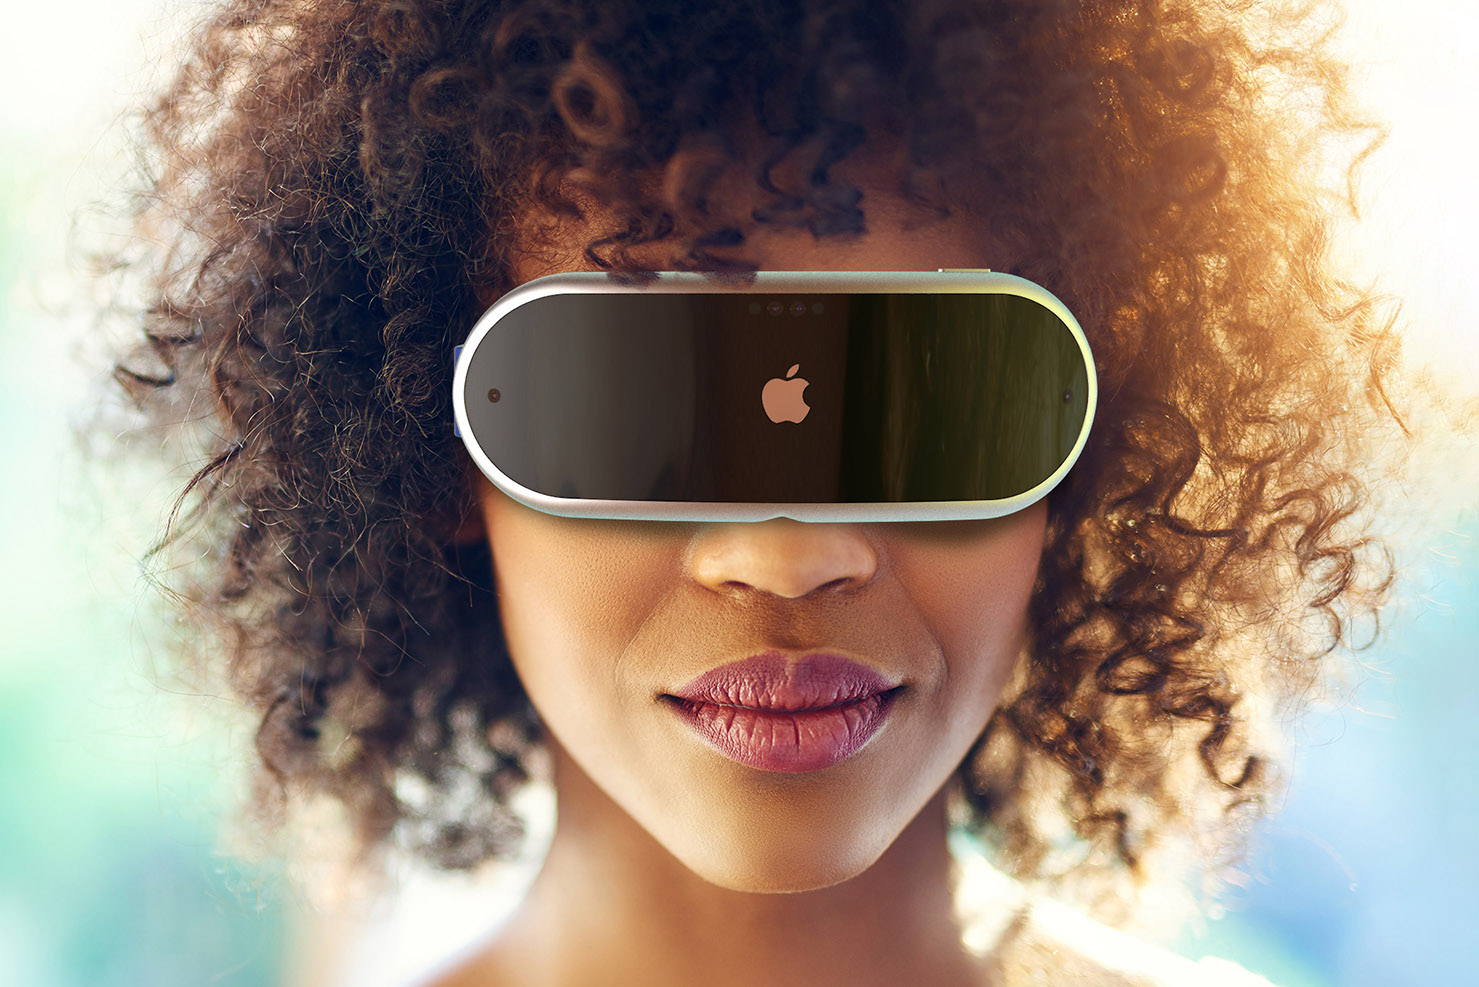 Apple’нинг VR гарнитураси янги тмкониятлар тақдим этмоқда